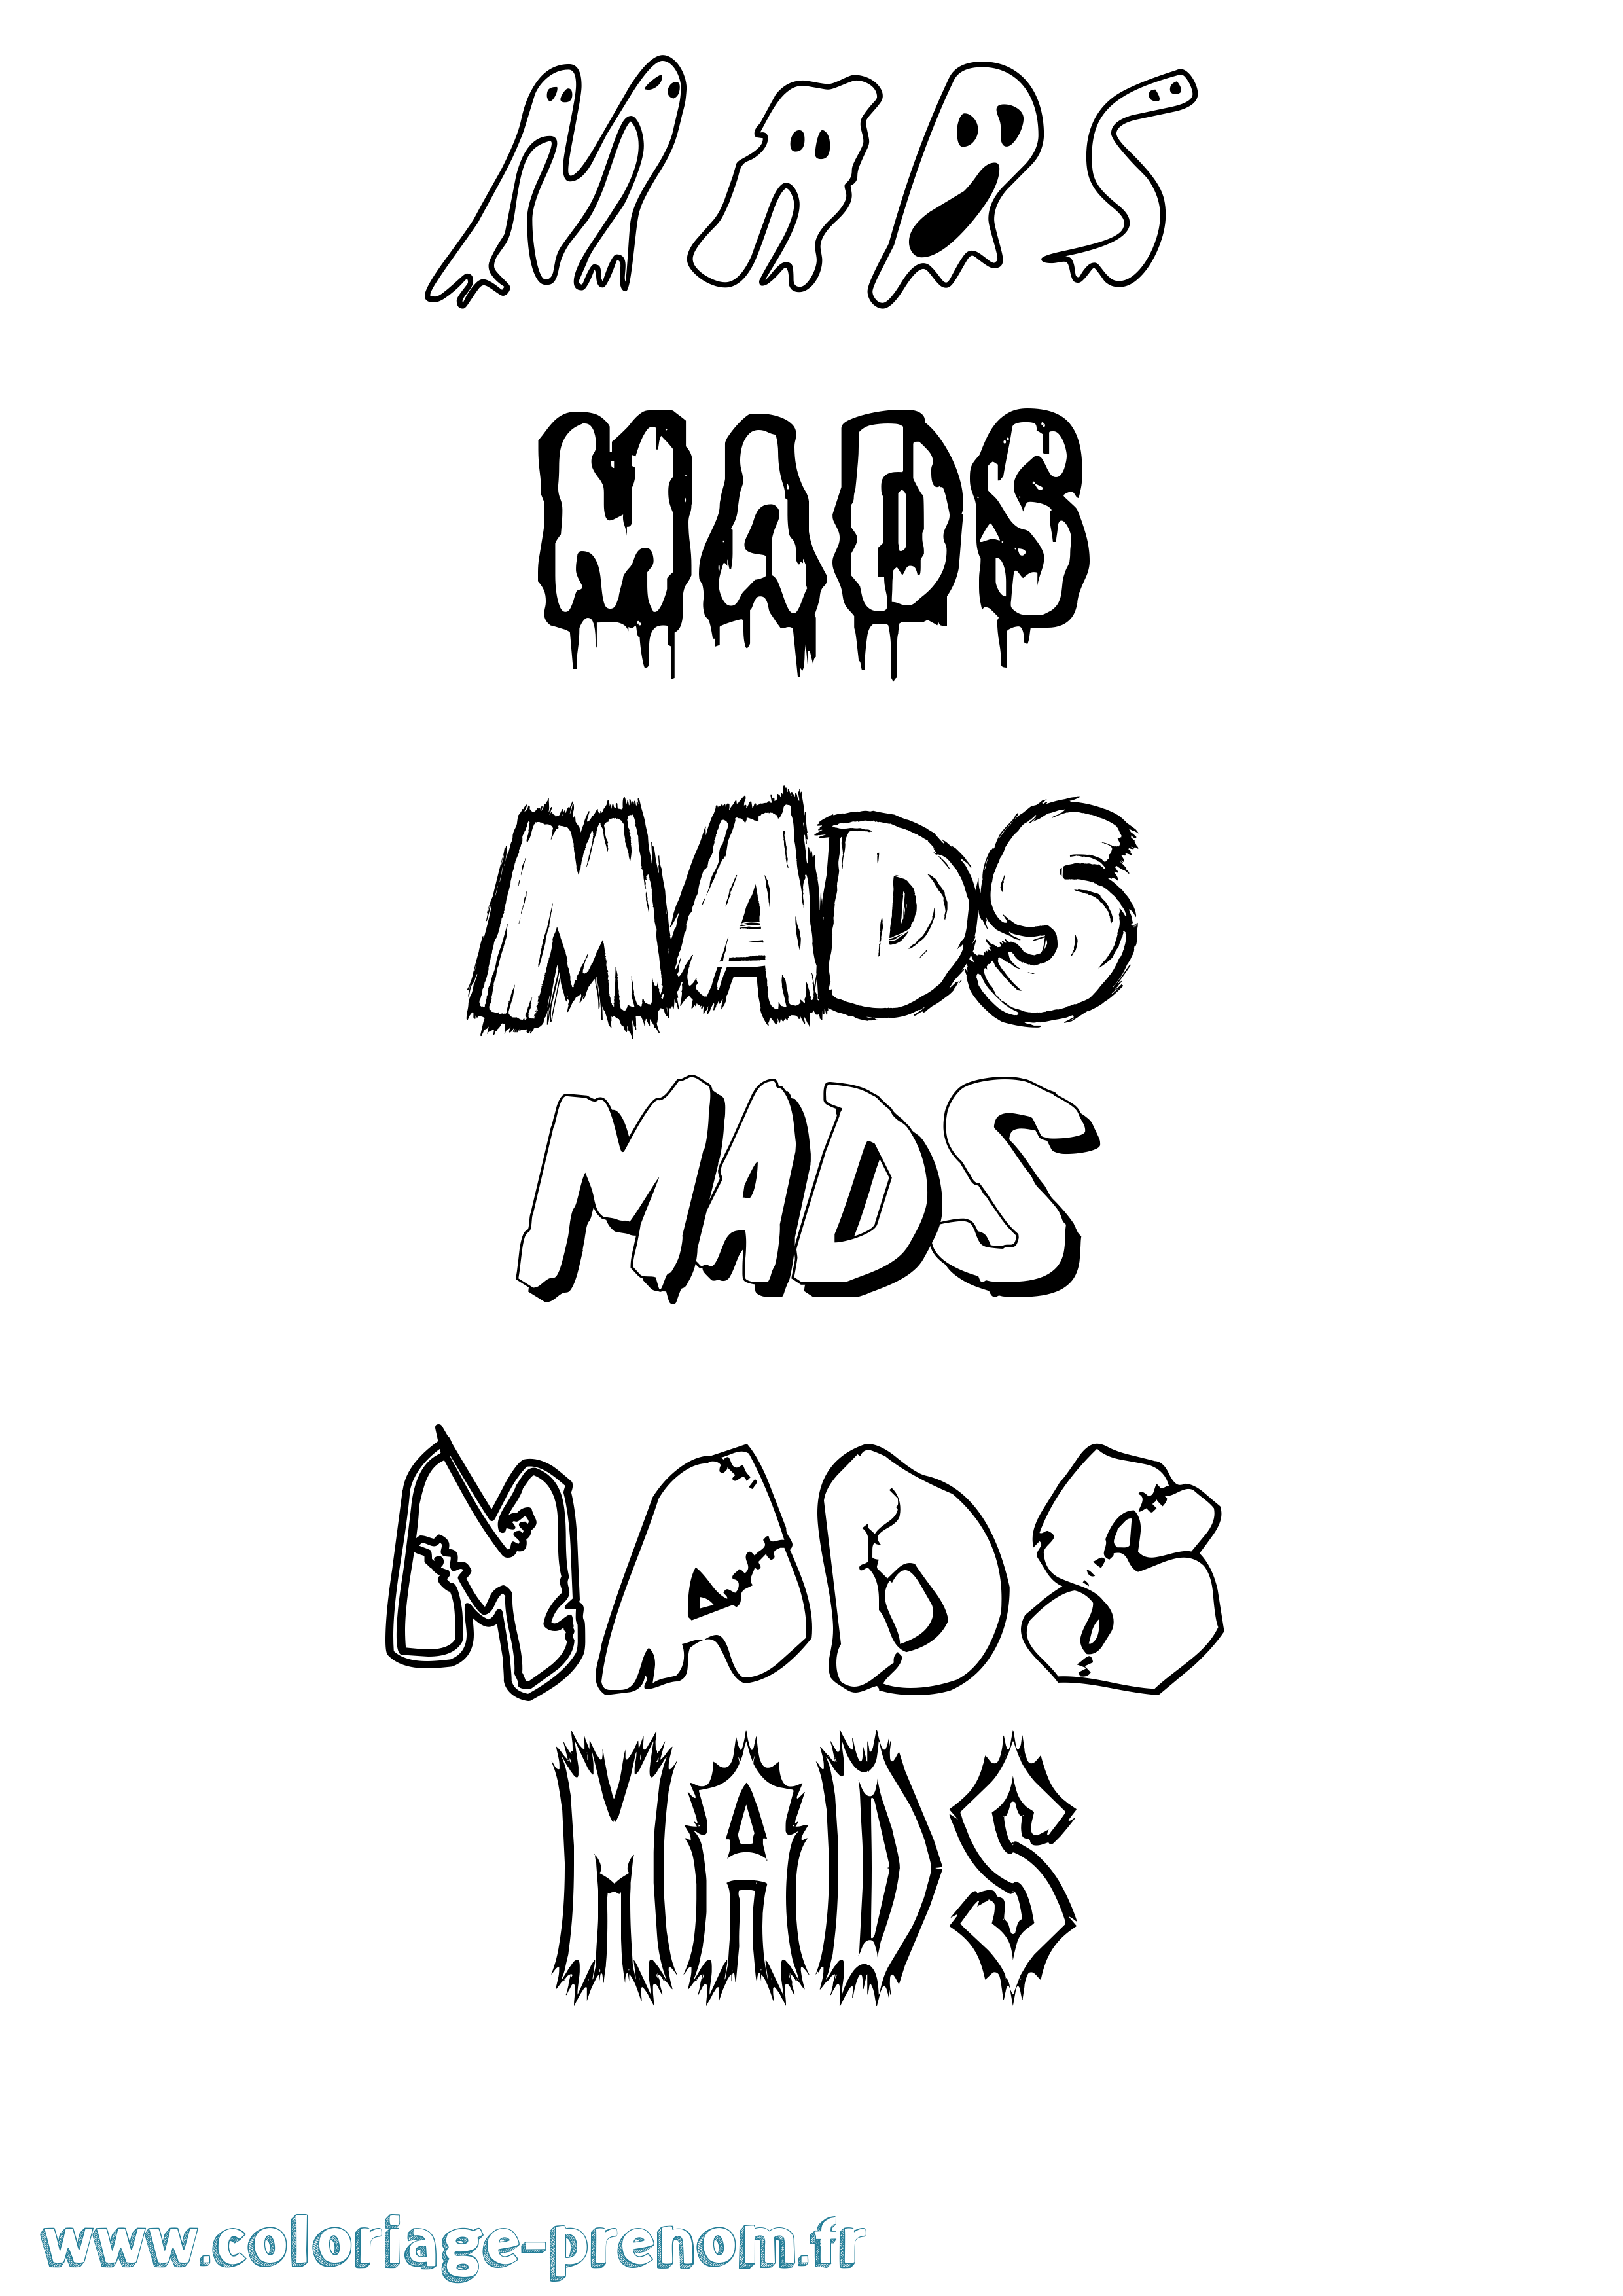 Coloriage prénom Mads Frisson